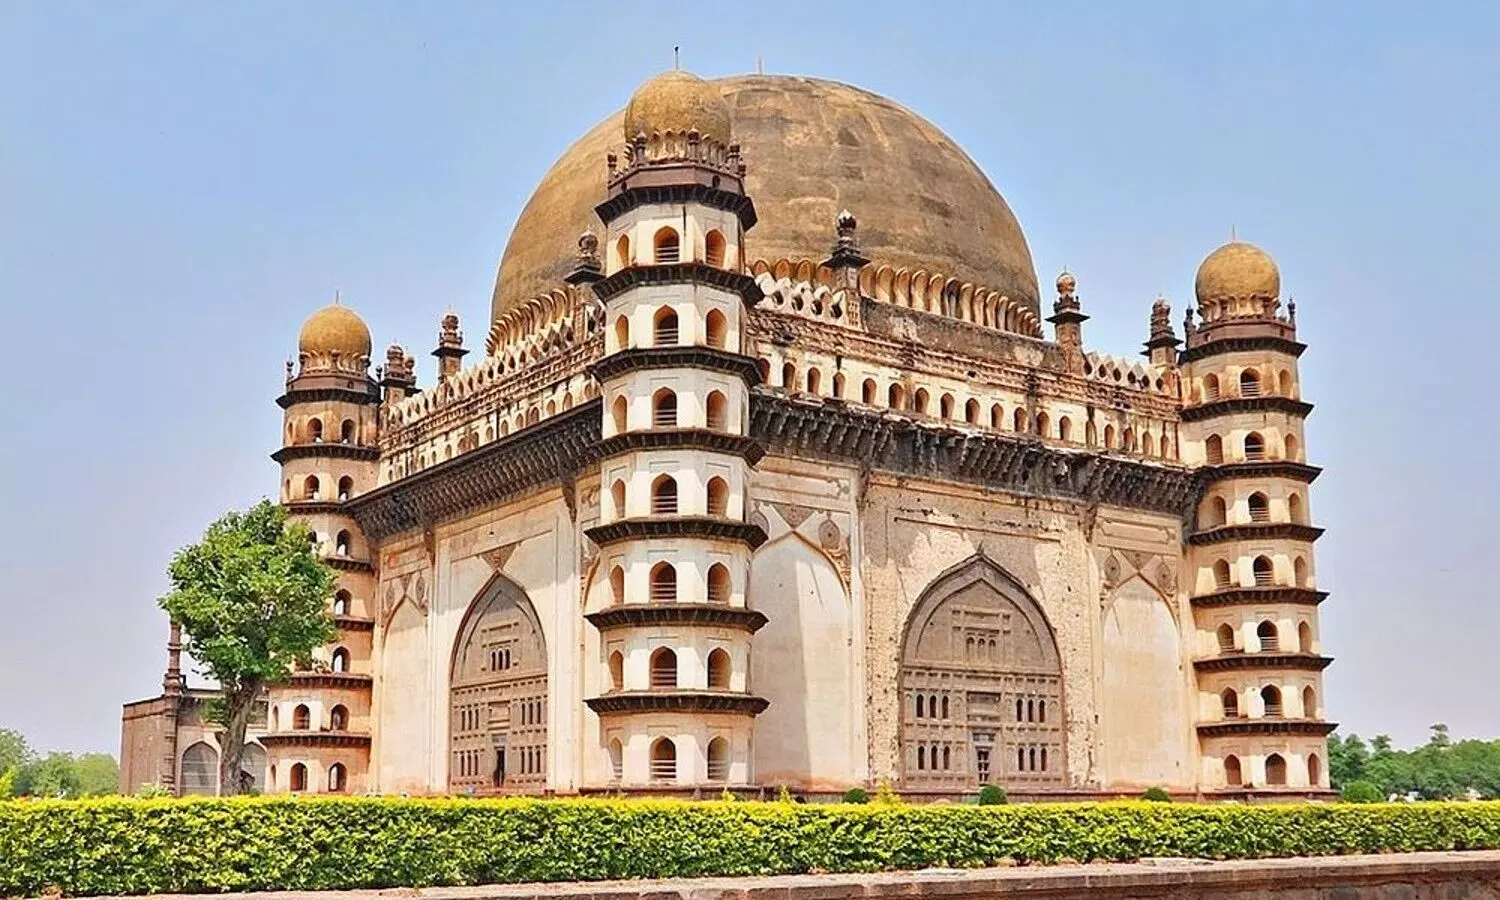 Gol Gumbaz Taj Mahal: दक्षिण भारत का ताजमहल, दुनिया के सबसे बड़े खड़े हुए गोल गुंबदों में से एक